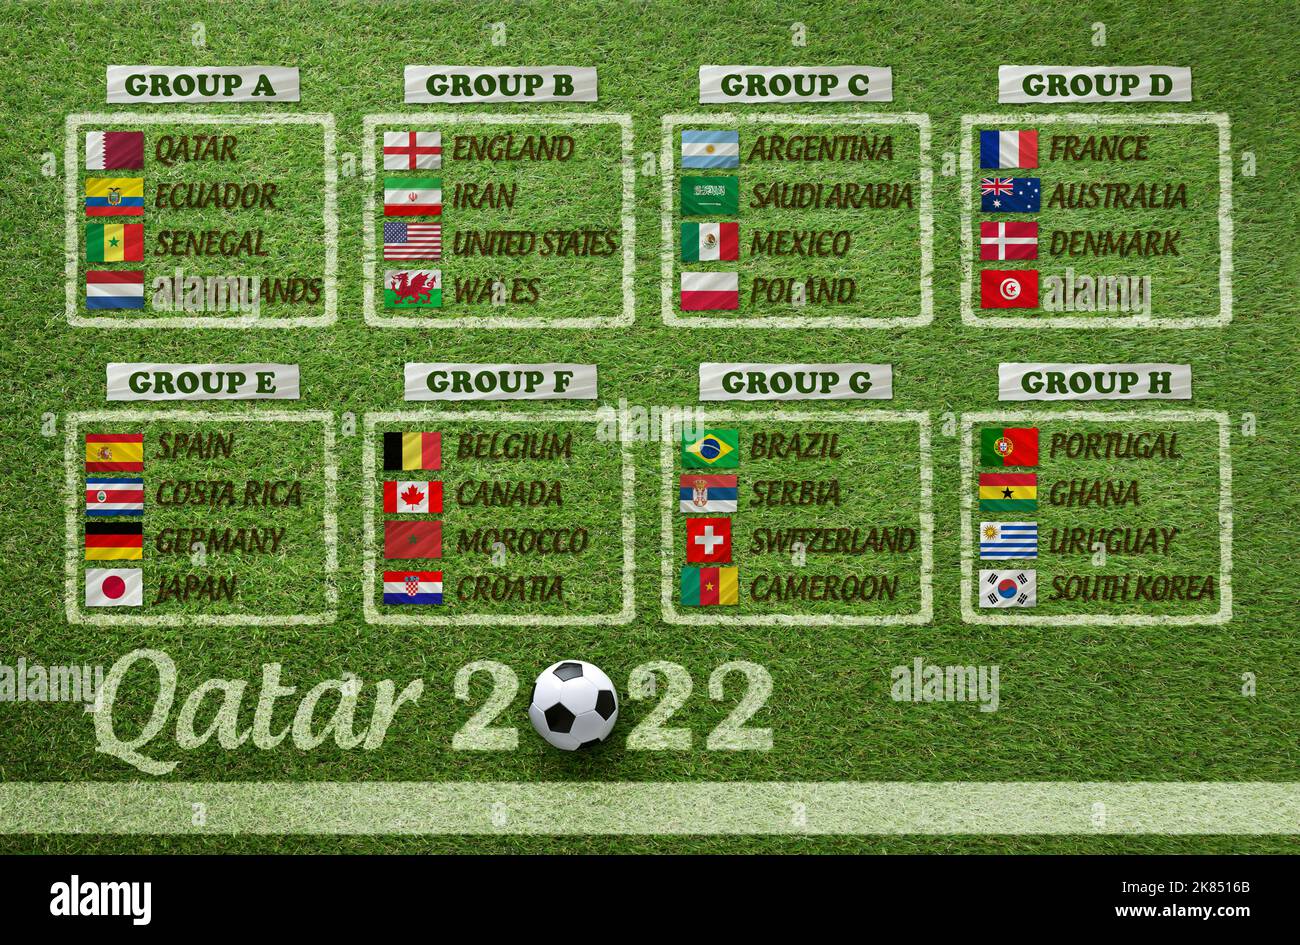 Tabella per gruppi di squadre qualificate per il torneo di calcio mondiale in qatar 2022. Foto Stock